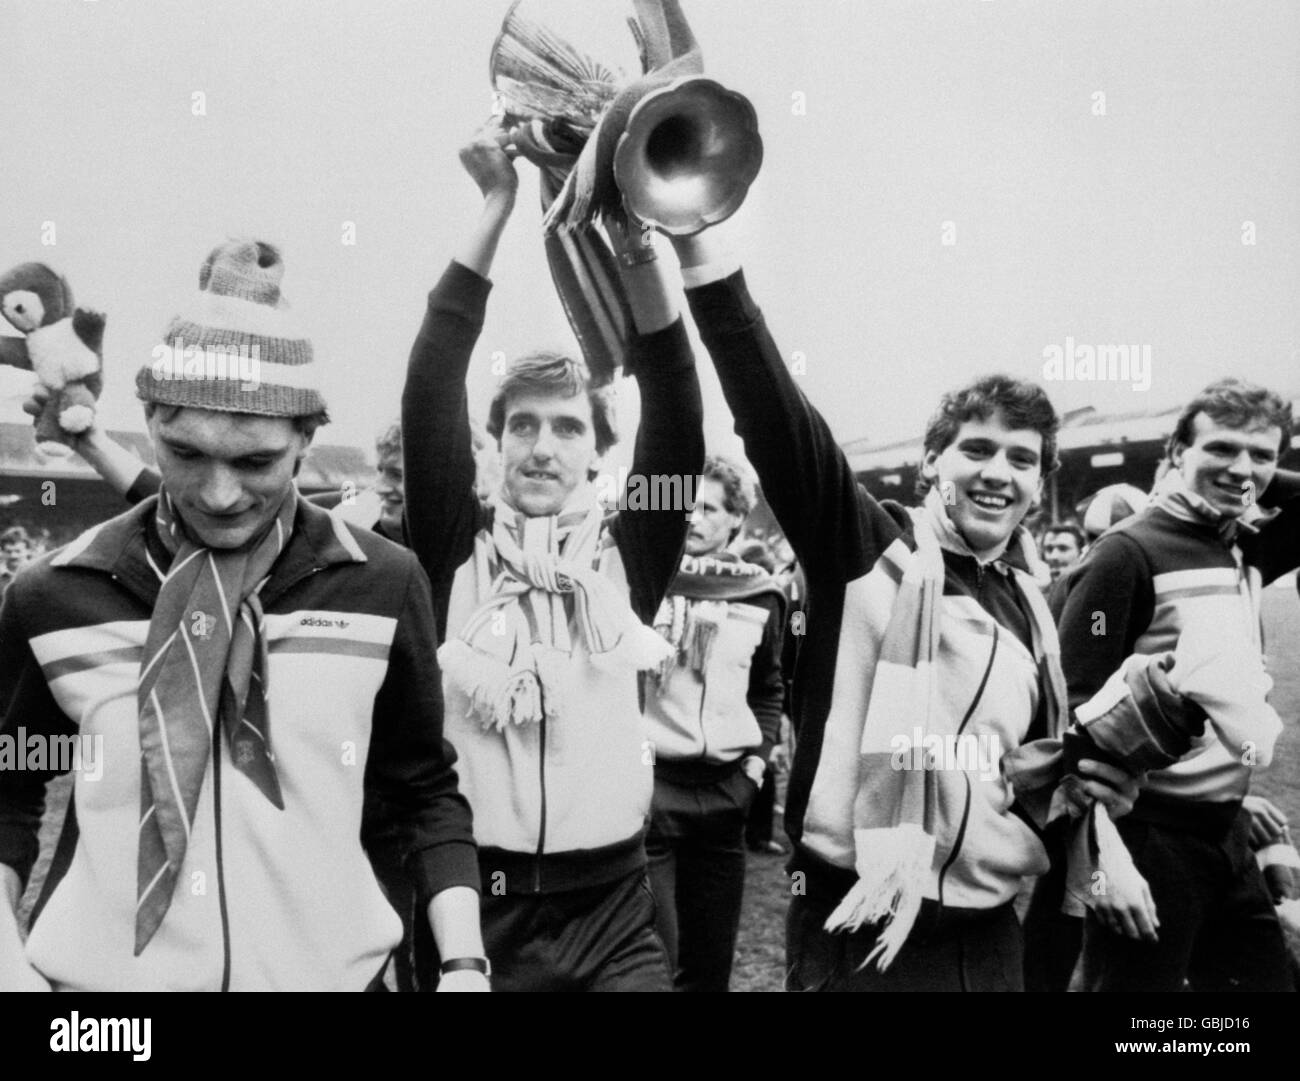 Membri della squadra di Aberdeen, da sinistra a destra, Jim Leighton, Peter Weir, Eric Black e Alex McLeish, durante un giro d'onore al Pittodrie Stadium di Aberdeen, dopo il loro giro trionfale in autobus attraverso le strade affollate. Foto Stock